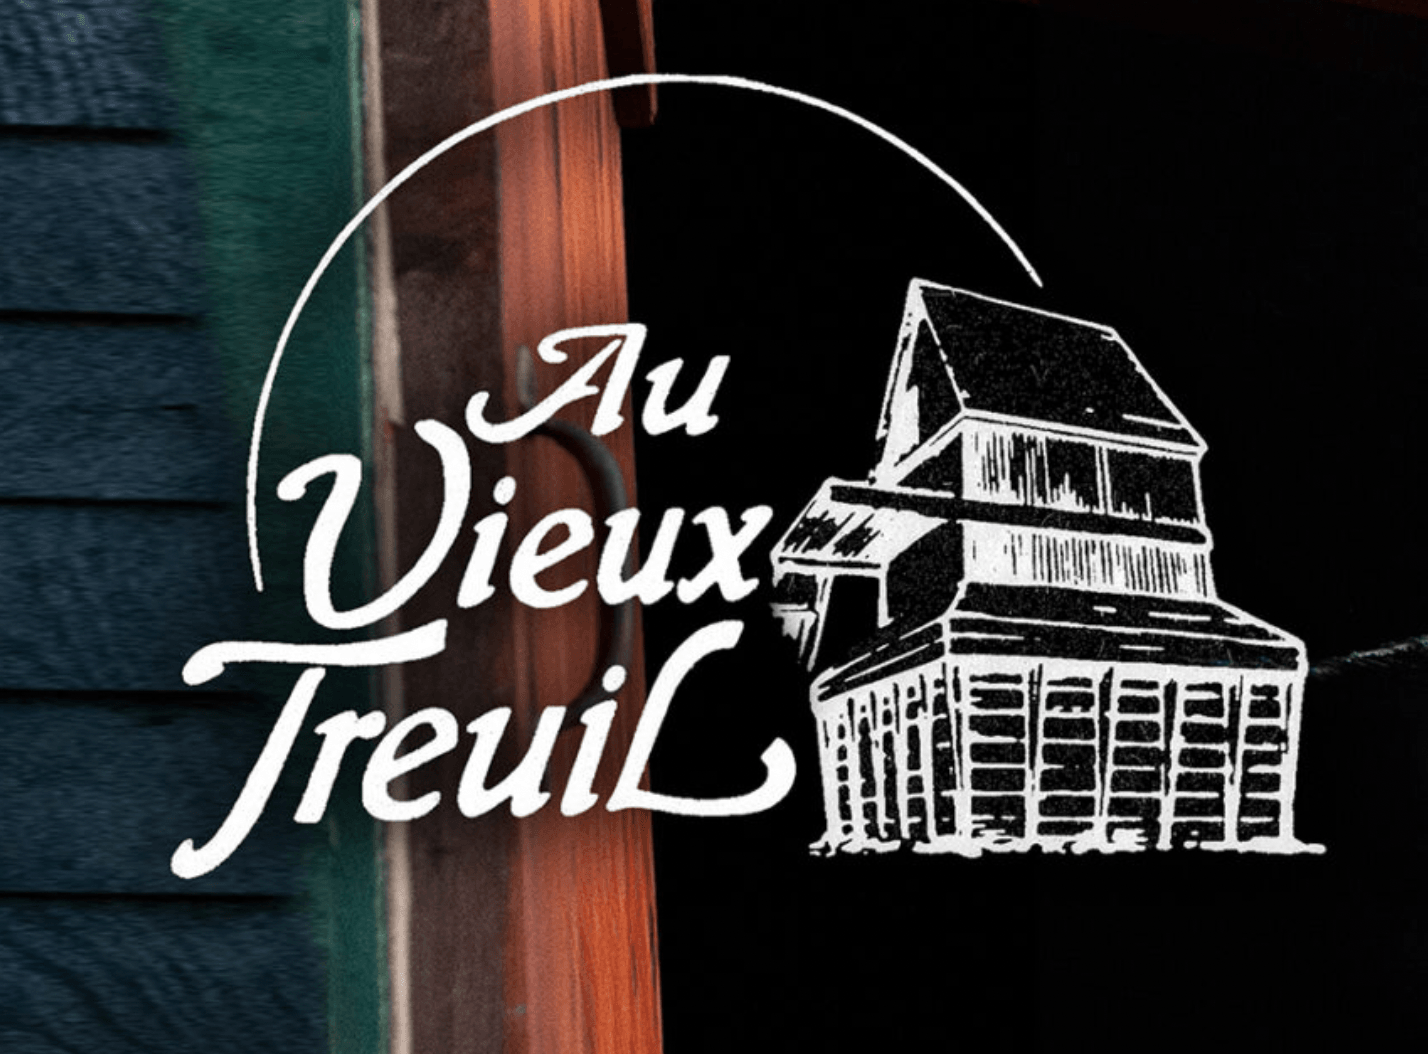 Salle Au Vieux Treuil